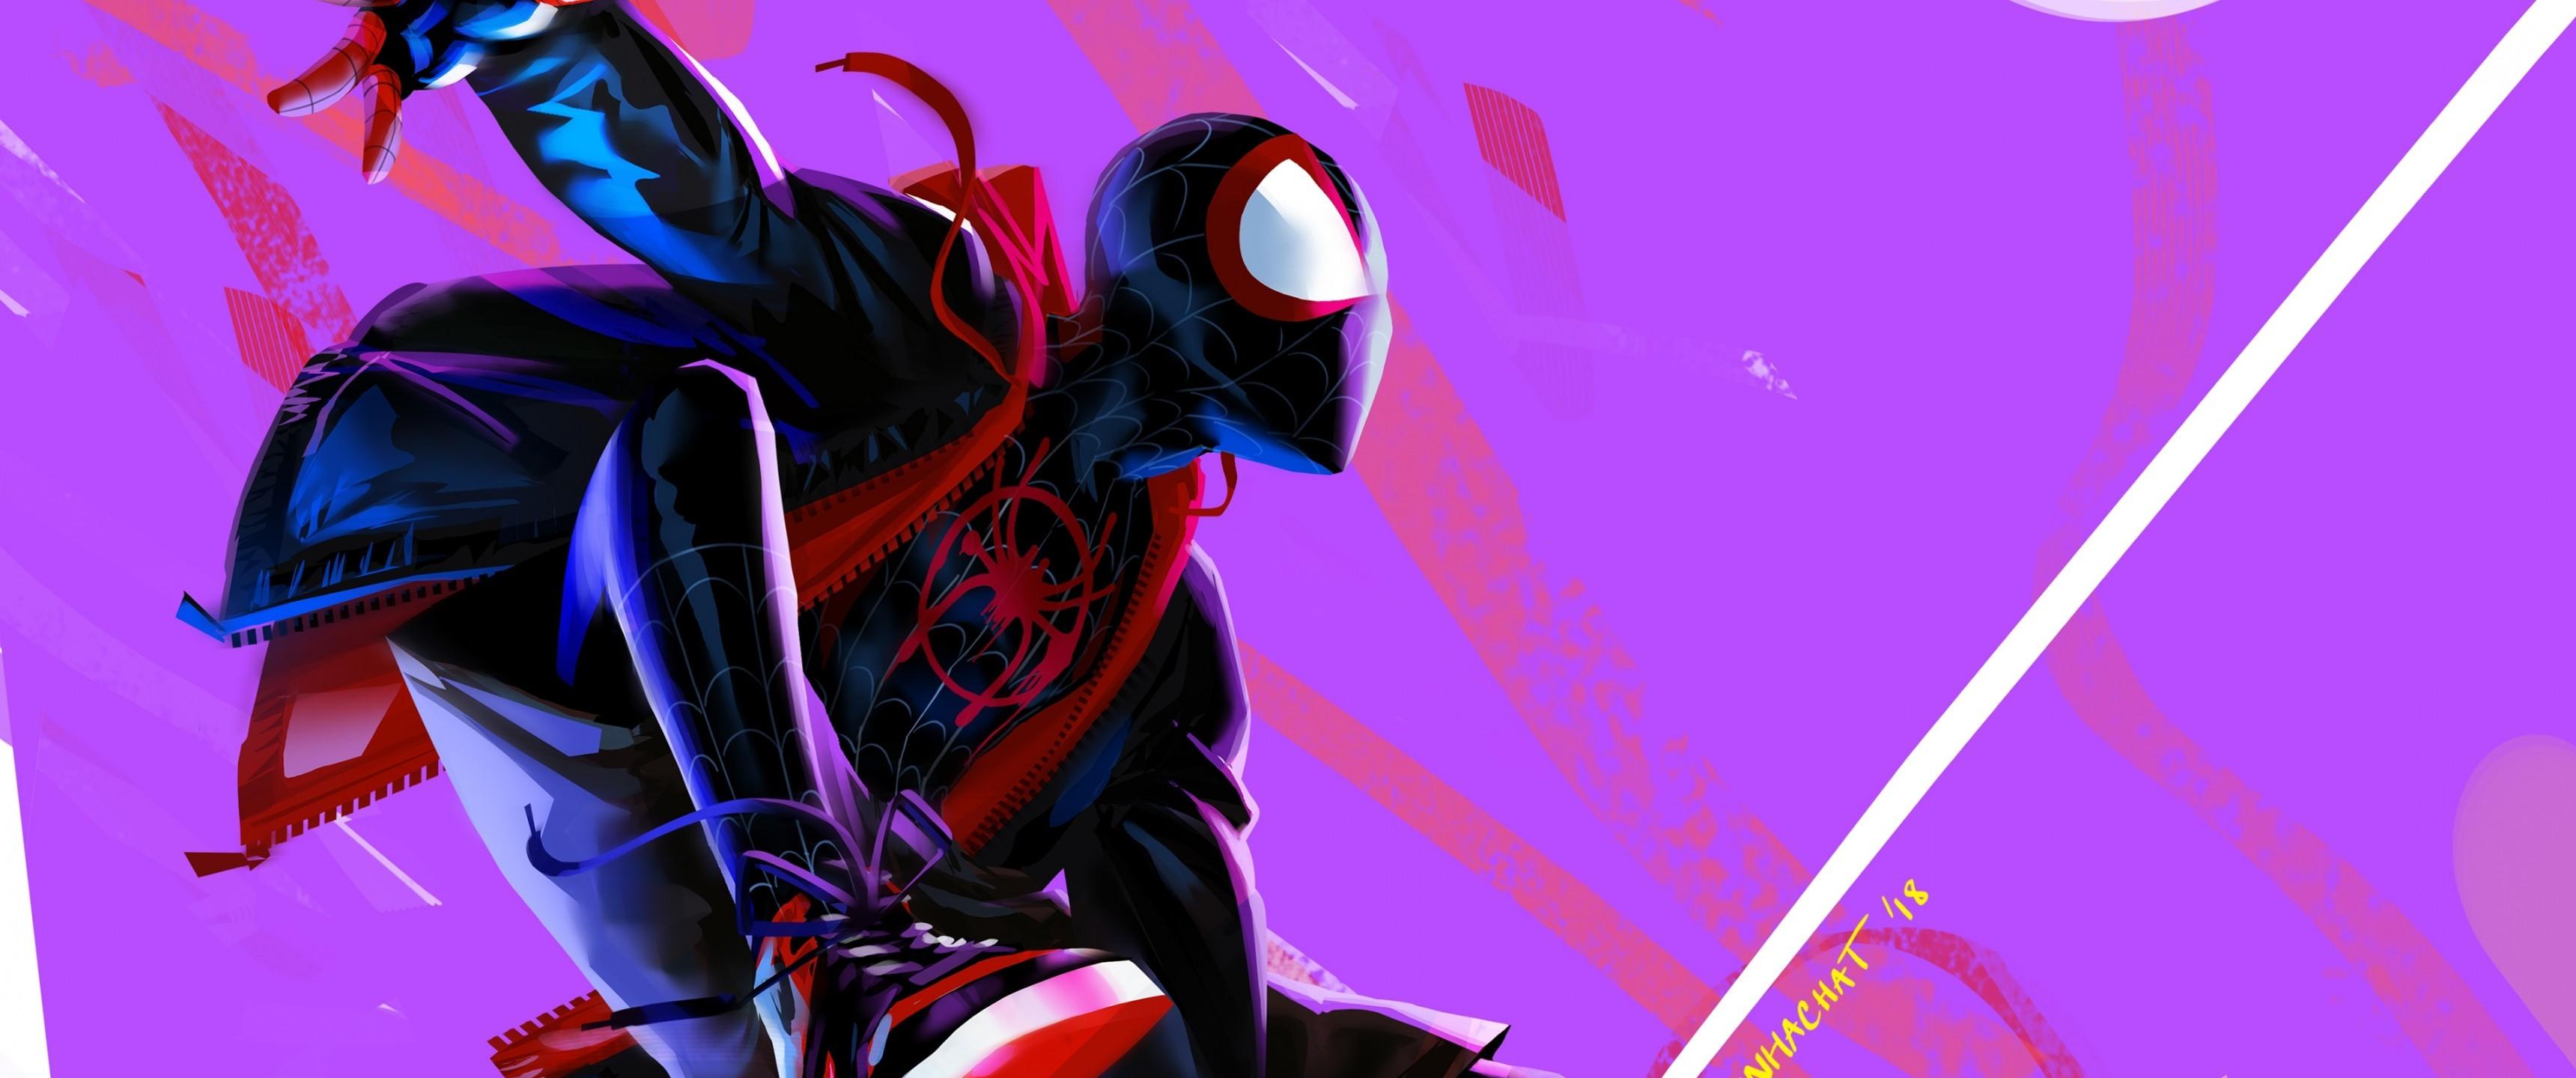 Download 3440x1440 Spider Man: Into The Spider Verse